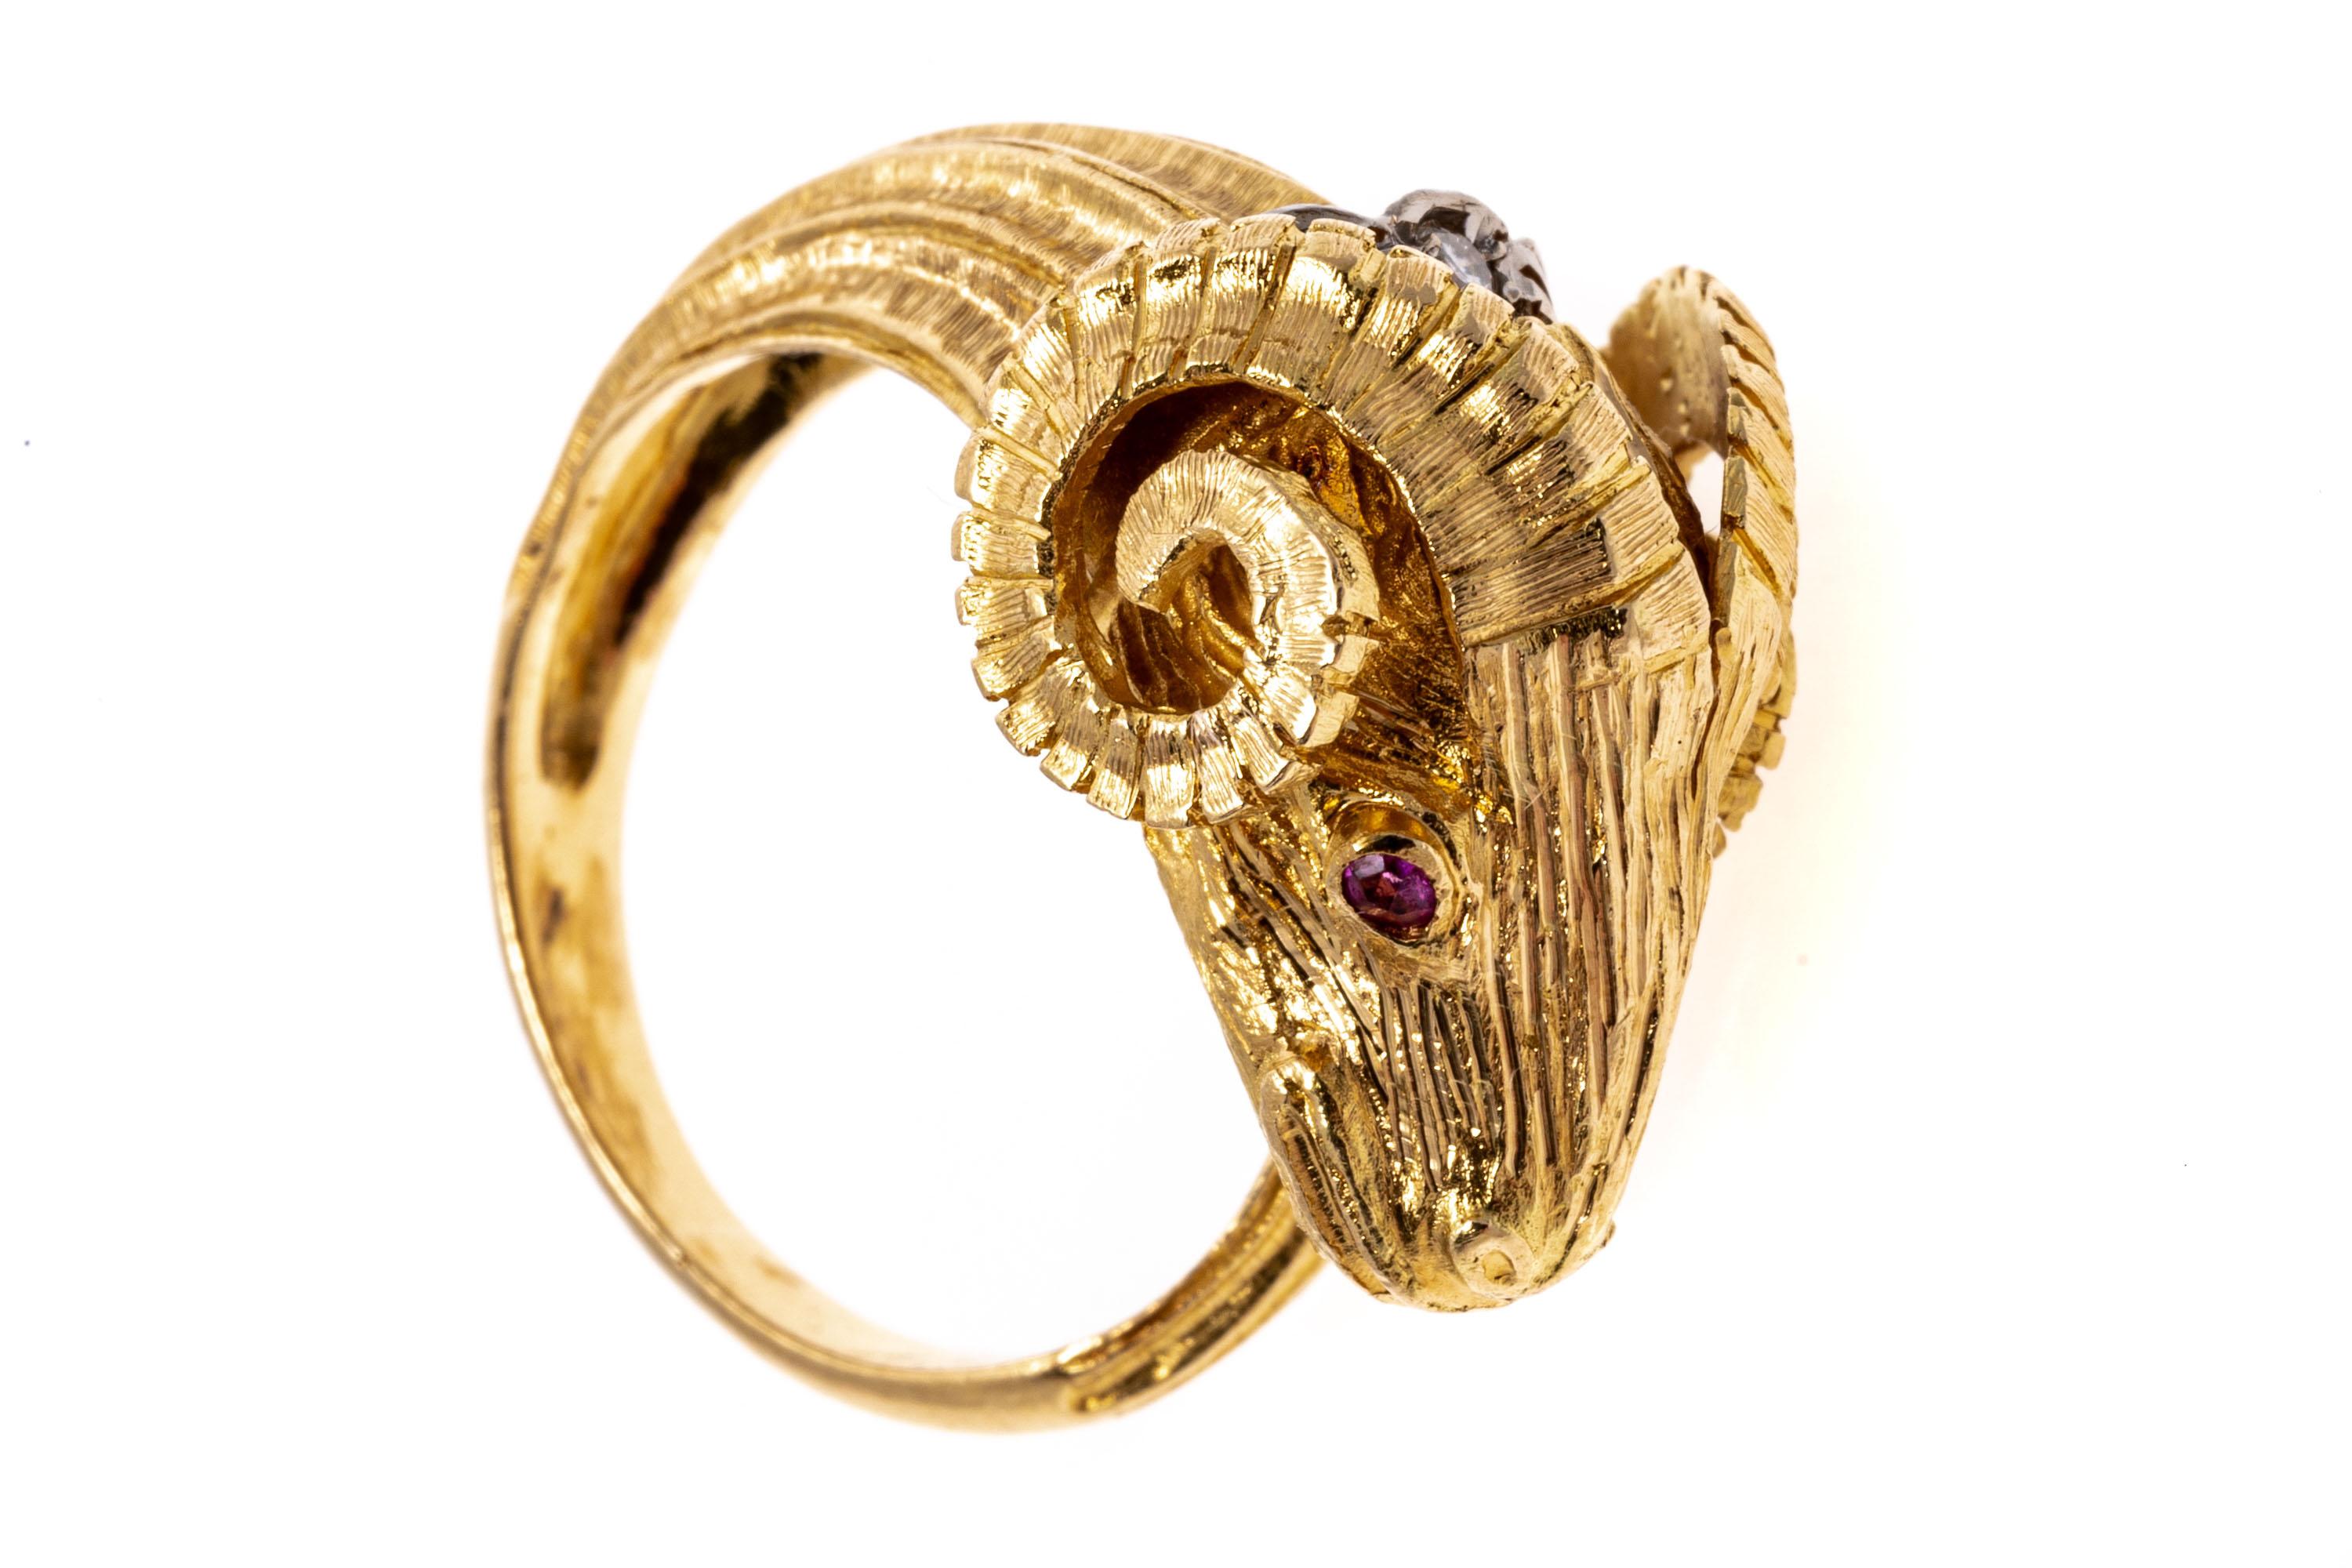 Dieser Ring aus 18 Karat Gelbgold wurde in Griechenland hergestellt und zeigt den Kopf eines Widders, dessen Schwanz sich um den Finger wickelt. In die Augen des Widders sind Rubine mit rundem Schliff eingelassen, während ein einzelner Diamant mit